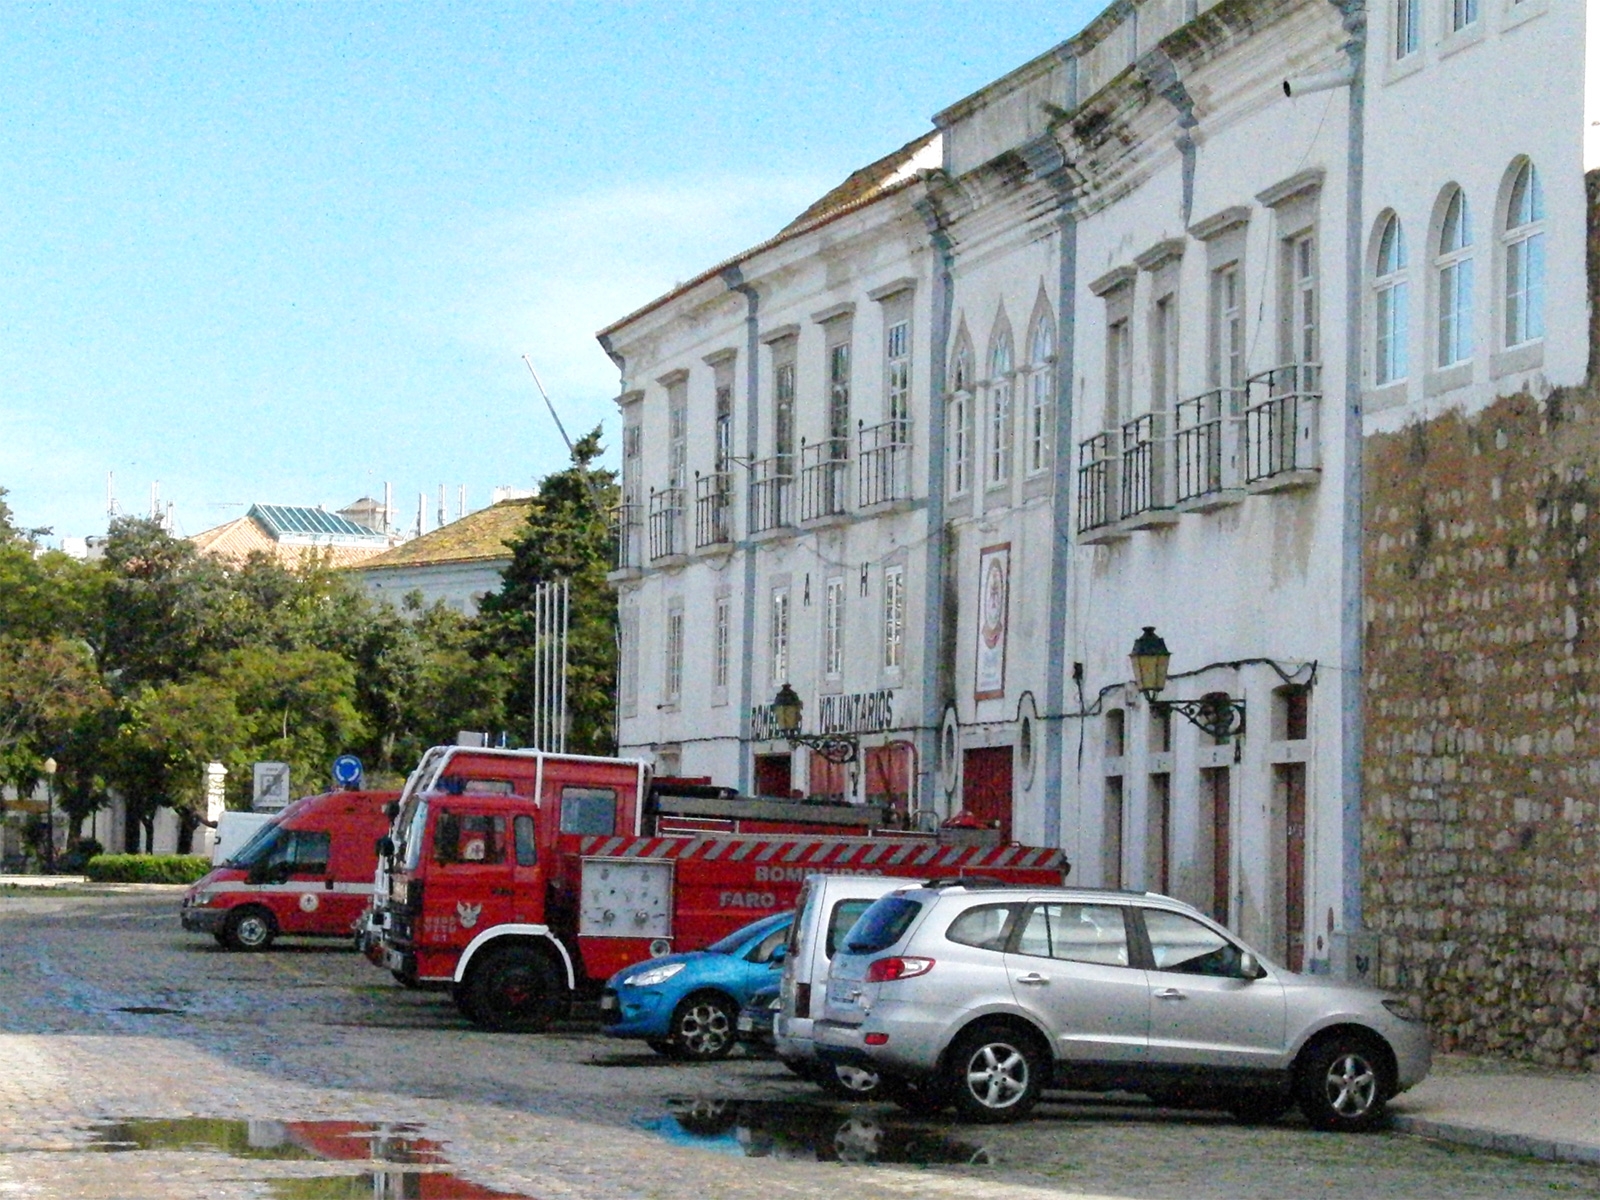 Fire brigade in Faro